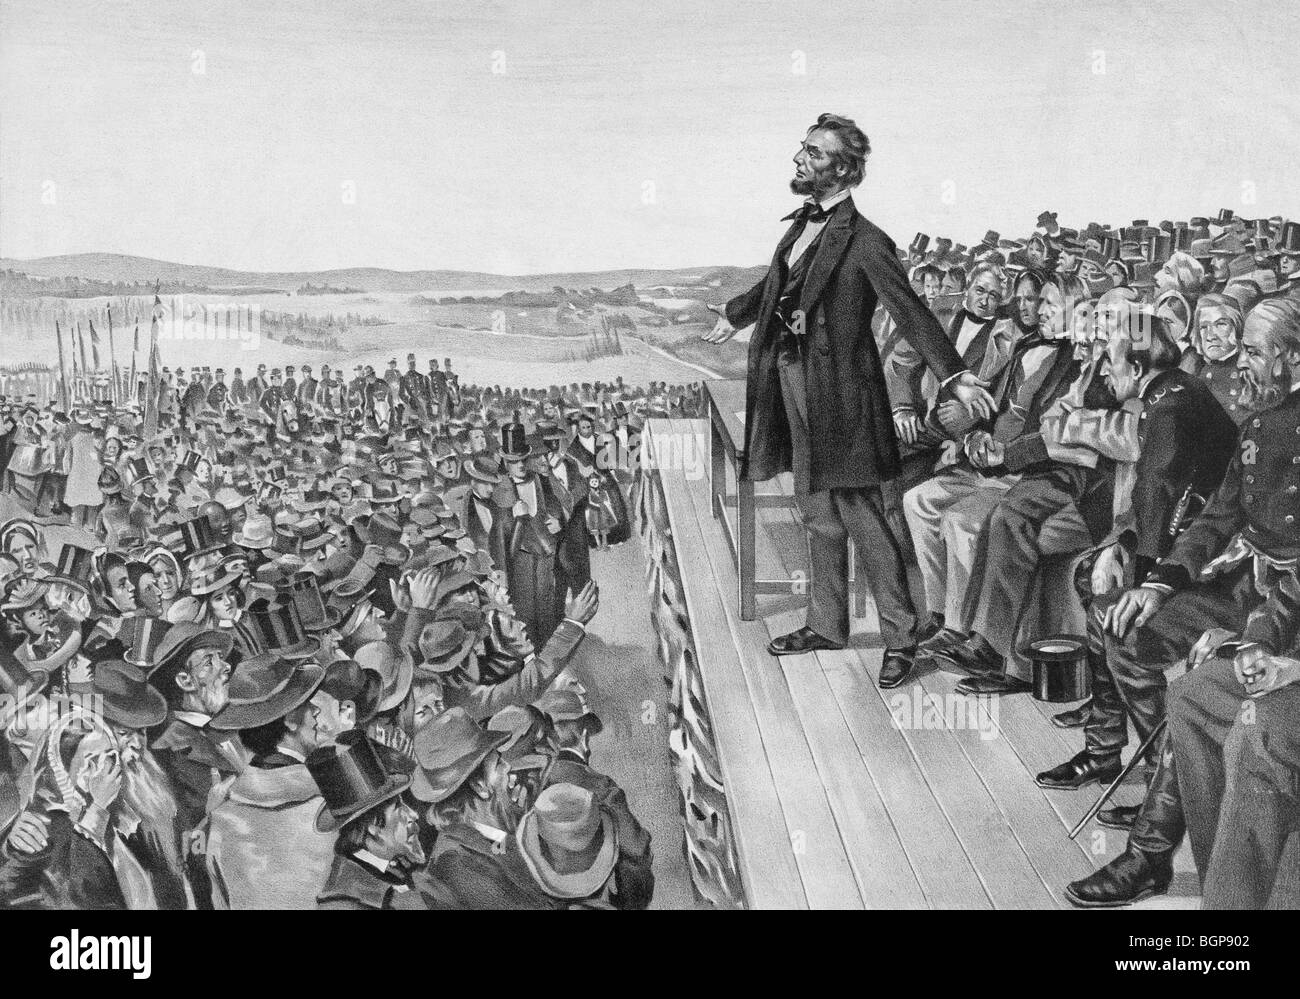 Imprimir c1905 del Presidente de los Estados Unidos Abraham Lincoln dando el famoso Discurso de Gettysburg el 19 de noviembre de 1863. Foto de stock